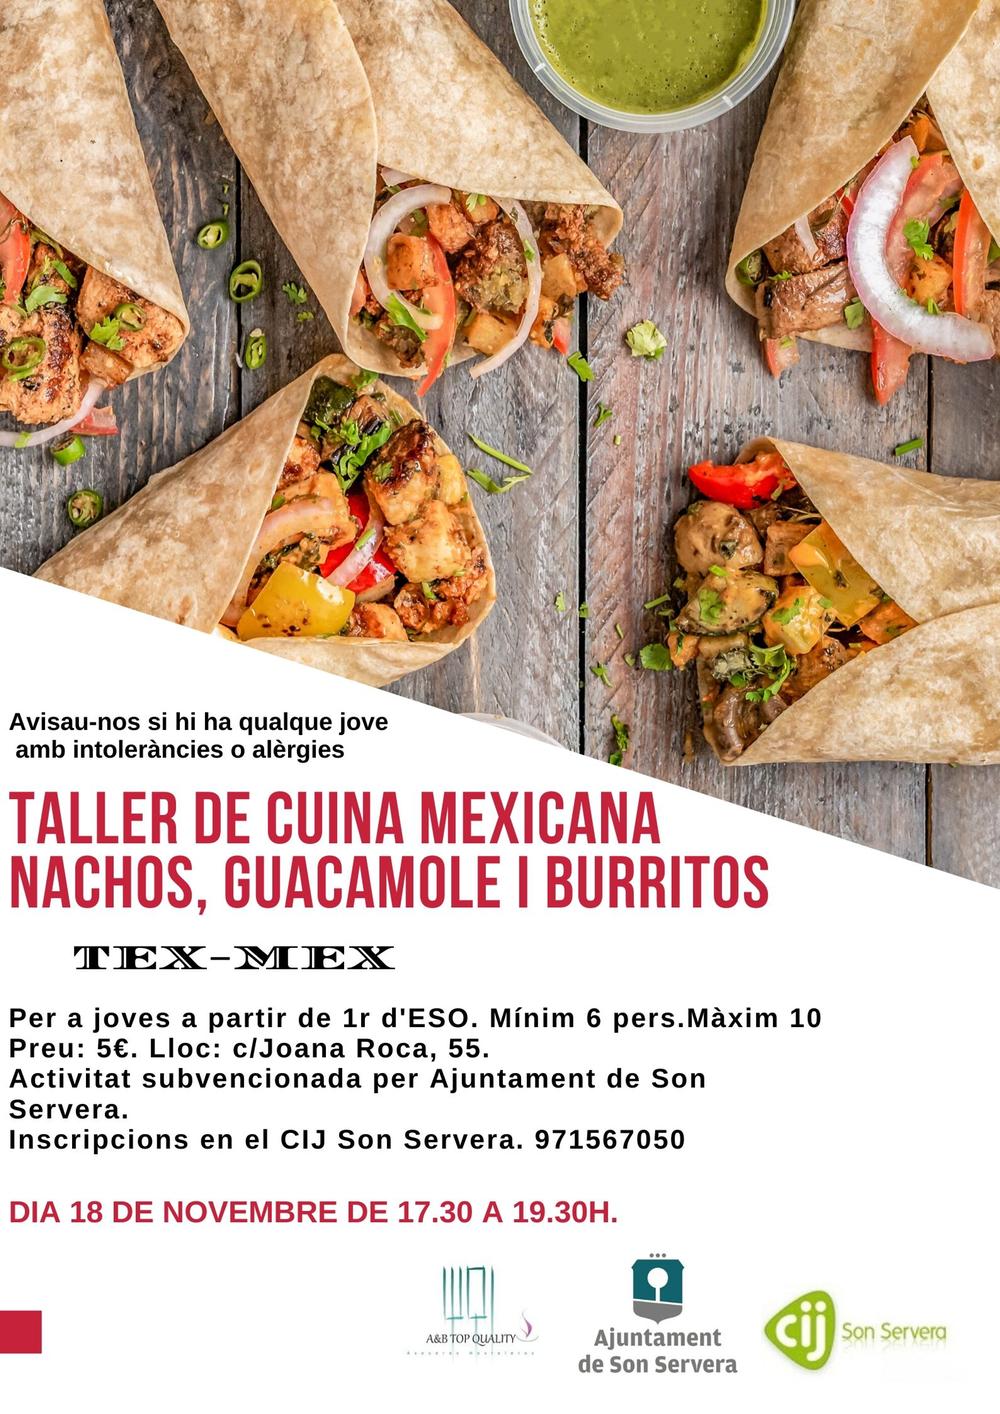 Taller de cocina mejicana: nachos, guacamole y burritos